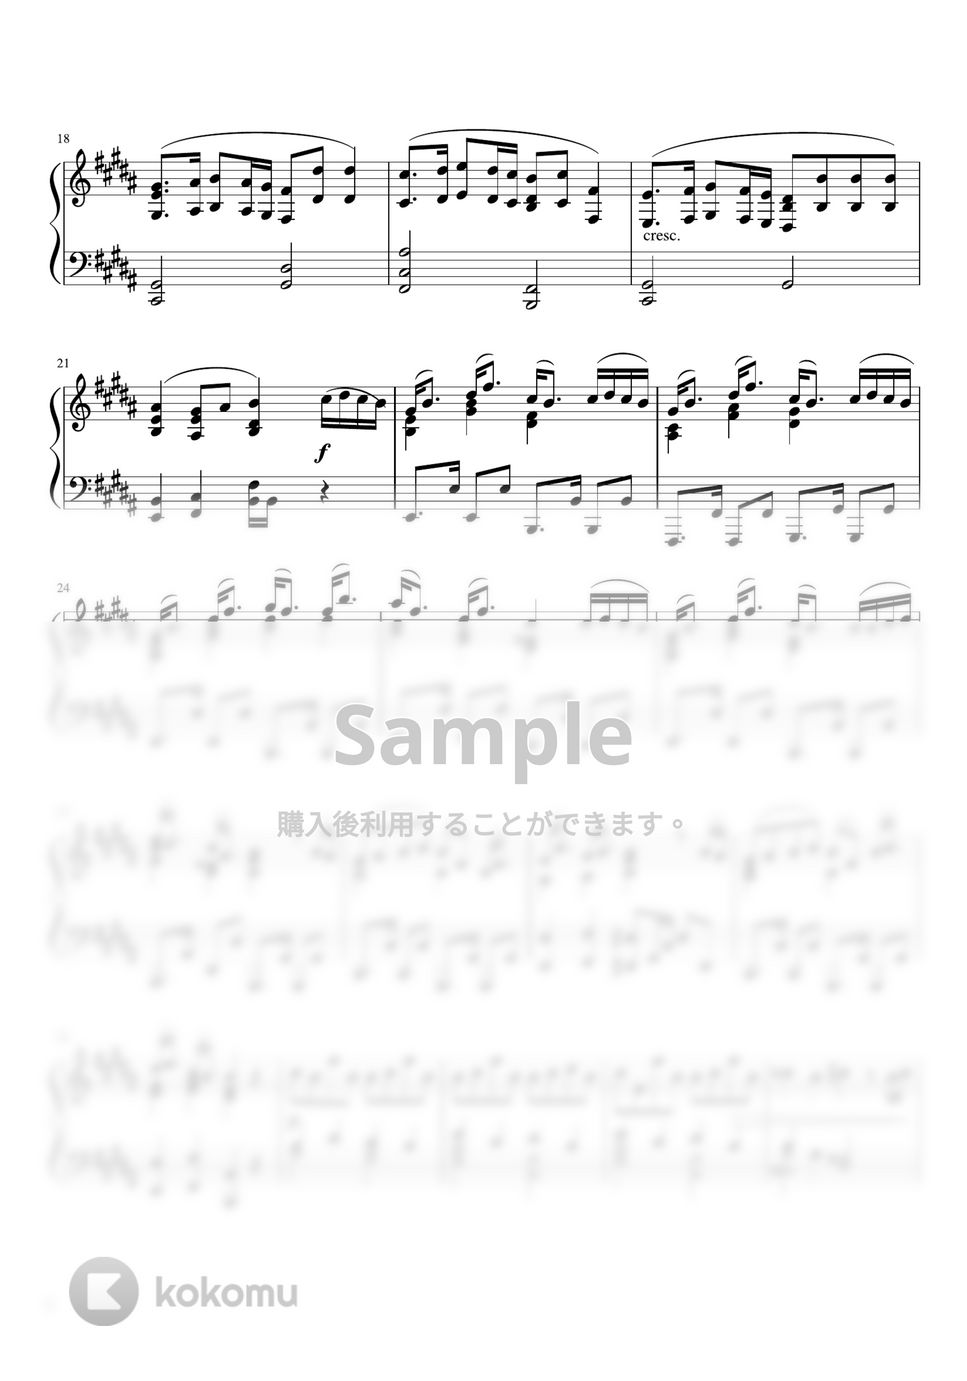 米津玄師 - 「LEMON」 (ピアノソロ・中級) by 牛武奏人